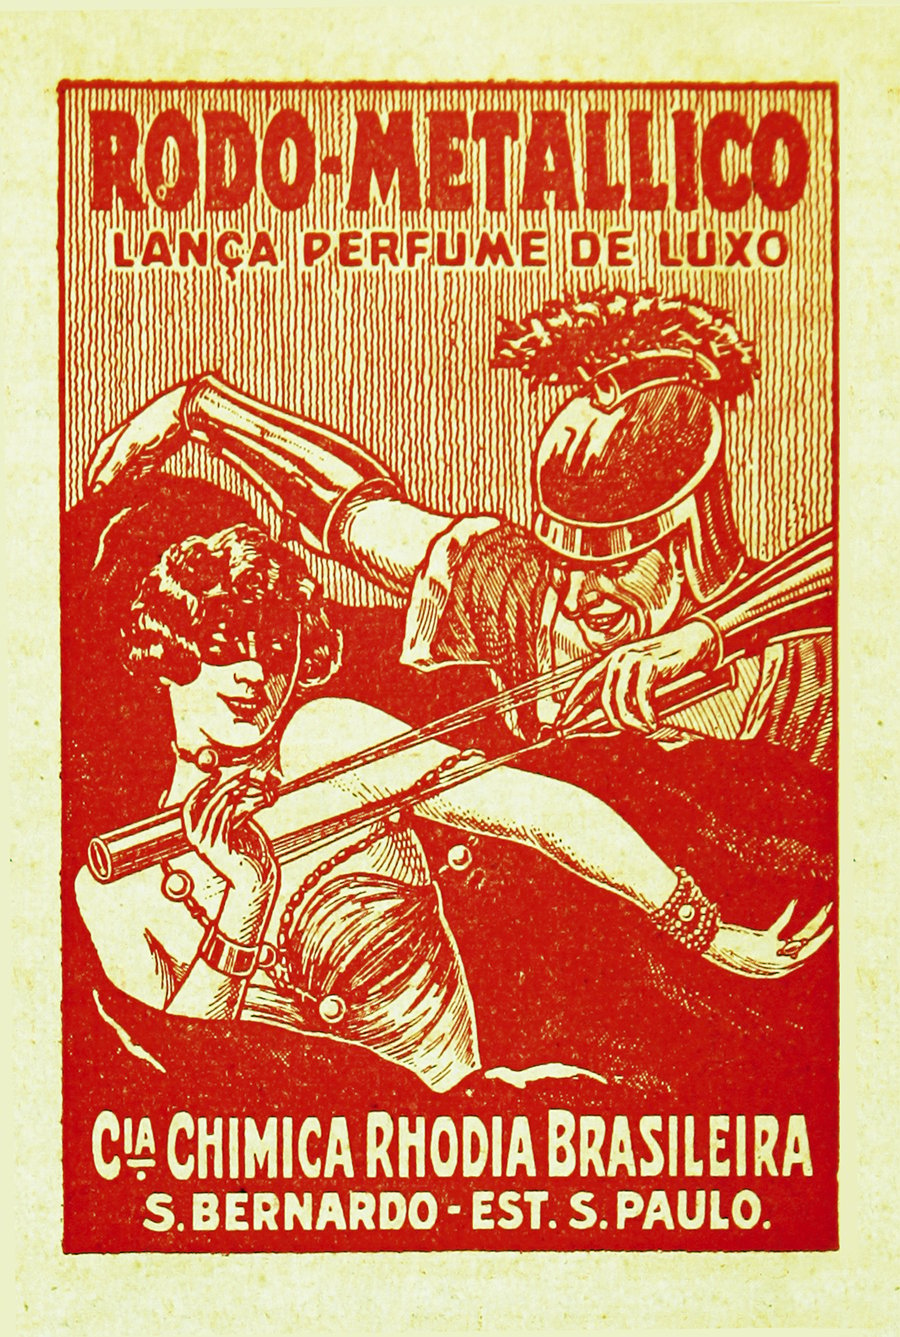 Publicidade do lança-perfume da Rhodia.